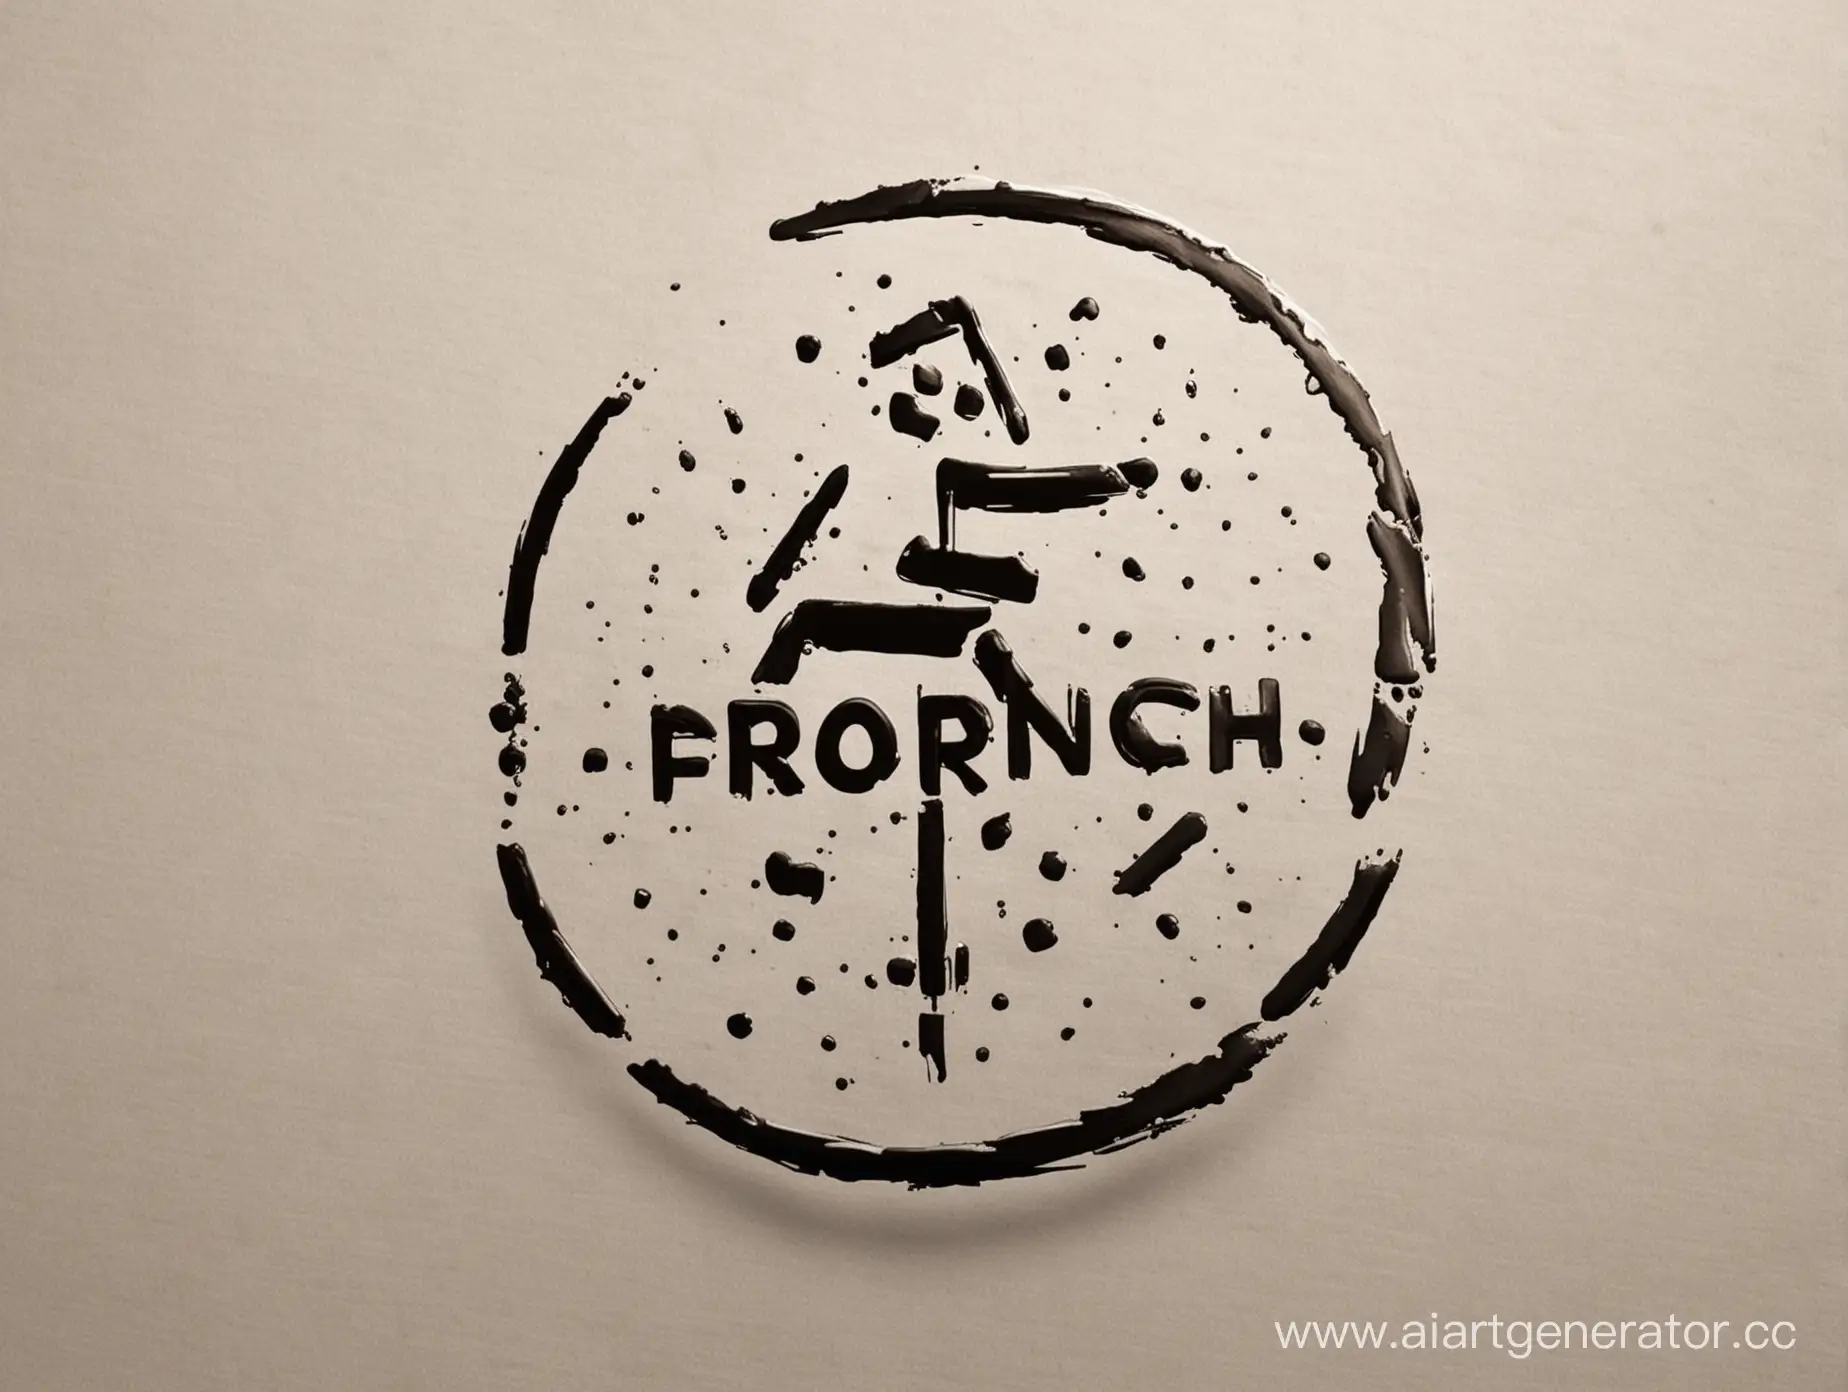 Сделай логотип компании "Erronchik" компания занимается IT-продуктами